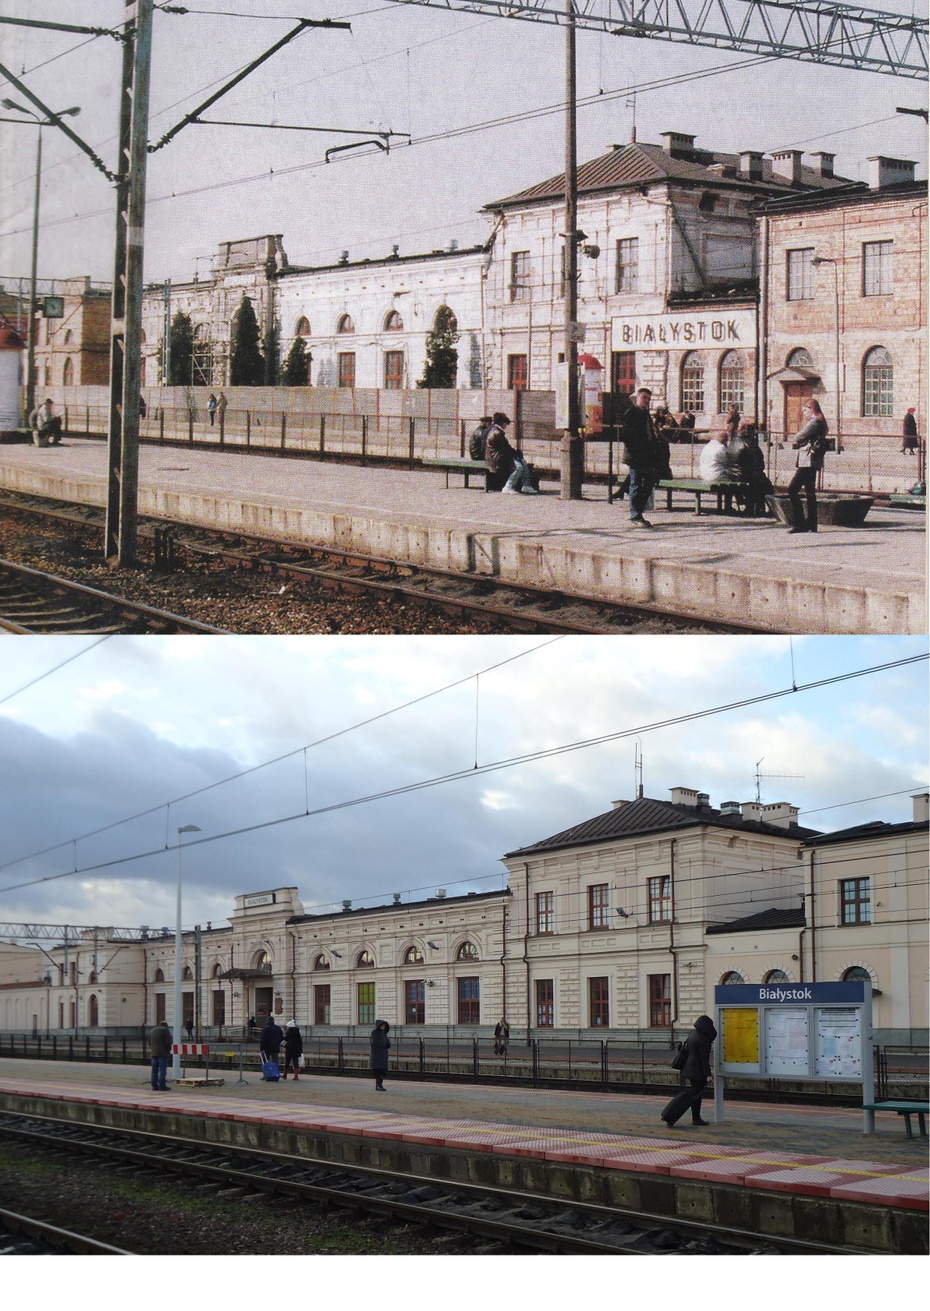 Porównanie wyglądu białostockiego dworca z 2002 i 2013 roku; (fot. Zygmunt Sobolewski - 2002/Tomasz Galicki - 2013)